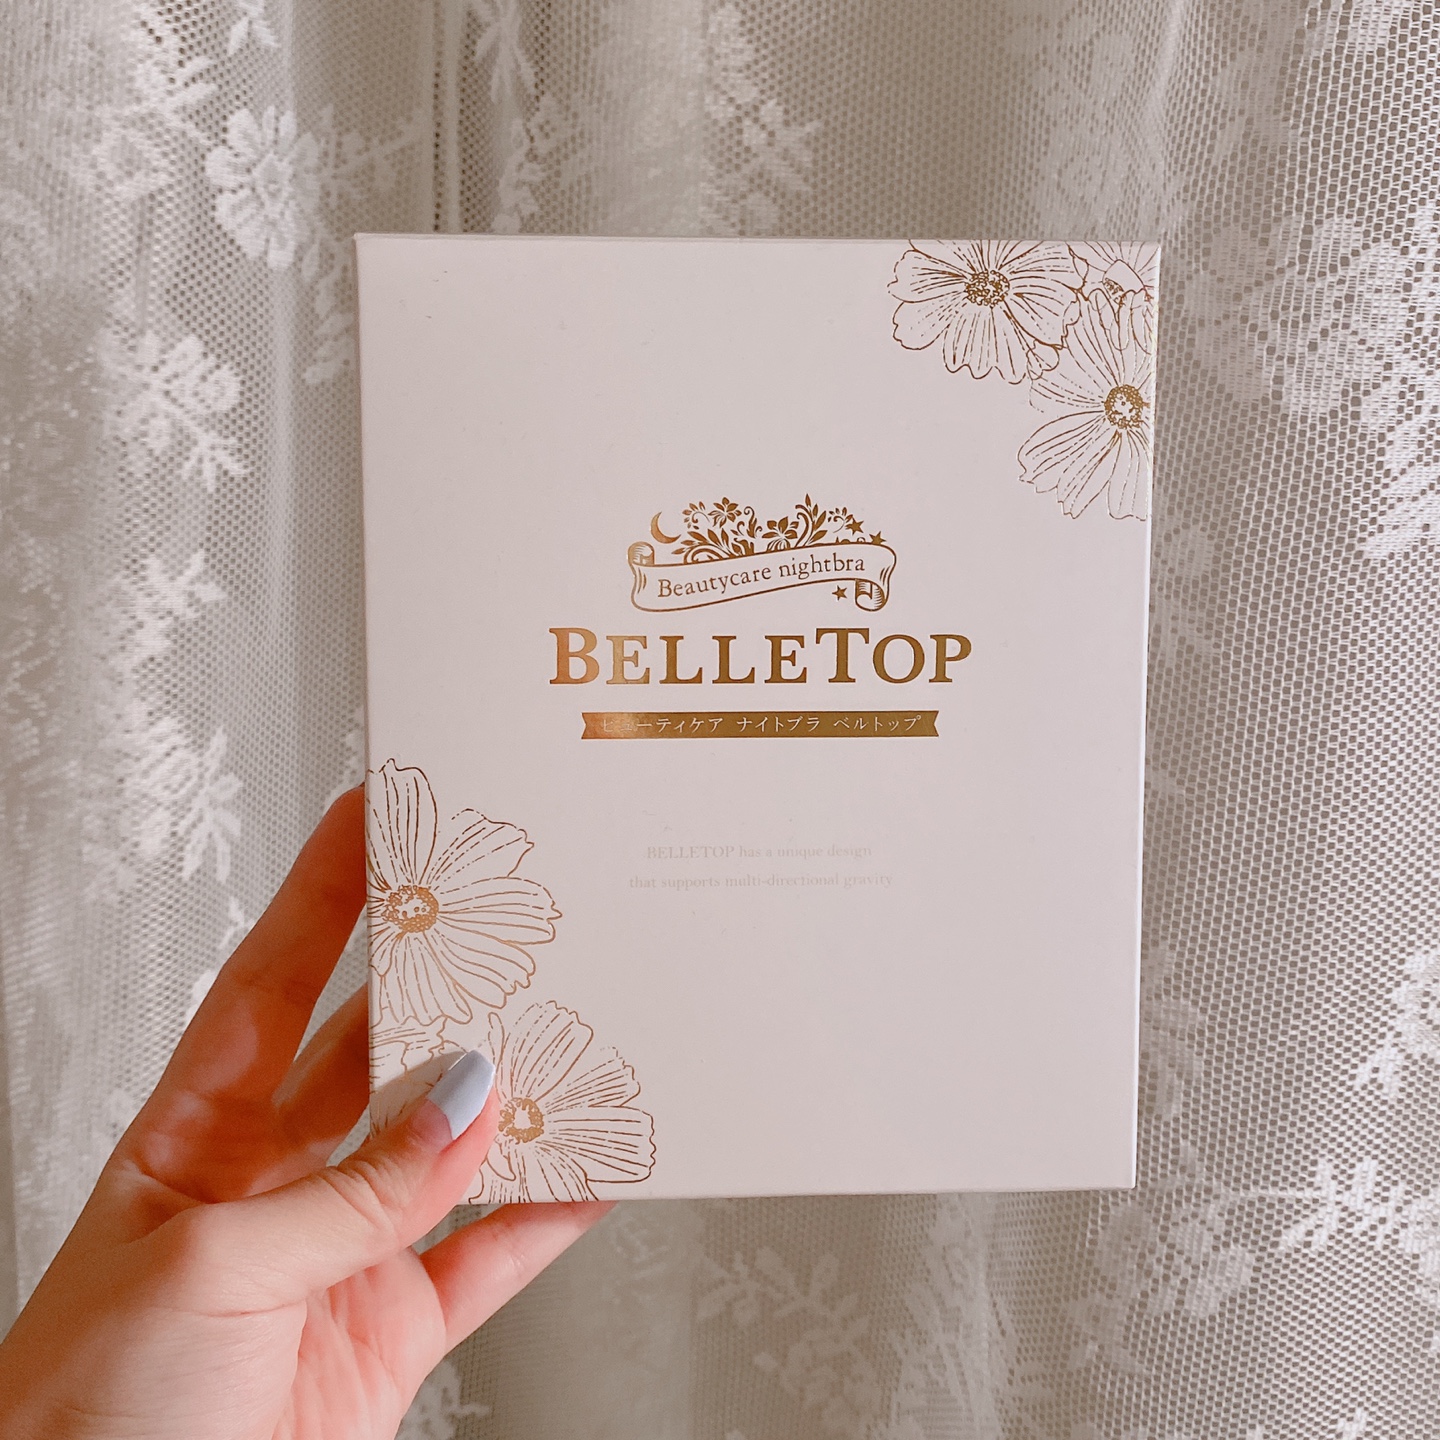 BELLETOP(ベルトップ)の商品パッケージの画像